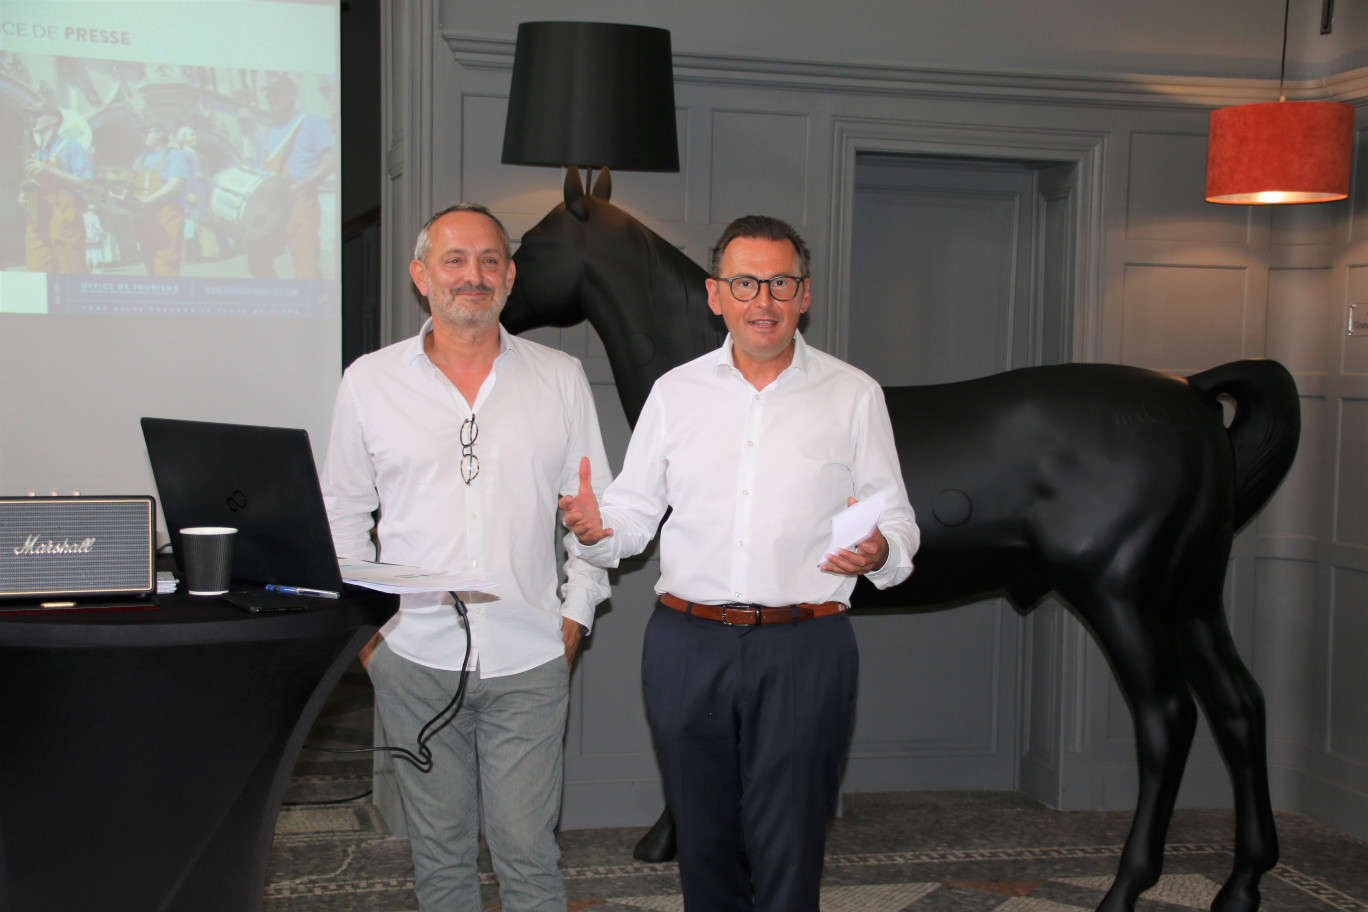 Lors de la présentation de la marque : Christian Berger, directeur général de l’Office de Tourisme Arras Pays d’Artois (à gauche), et Frédéric Leturque, président.